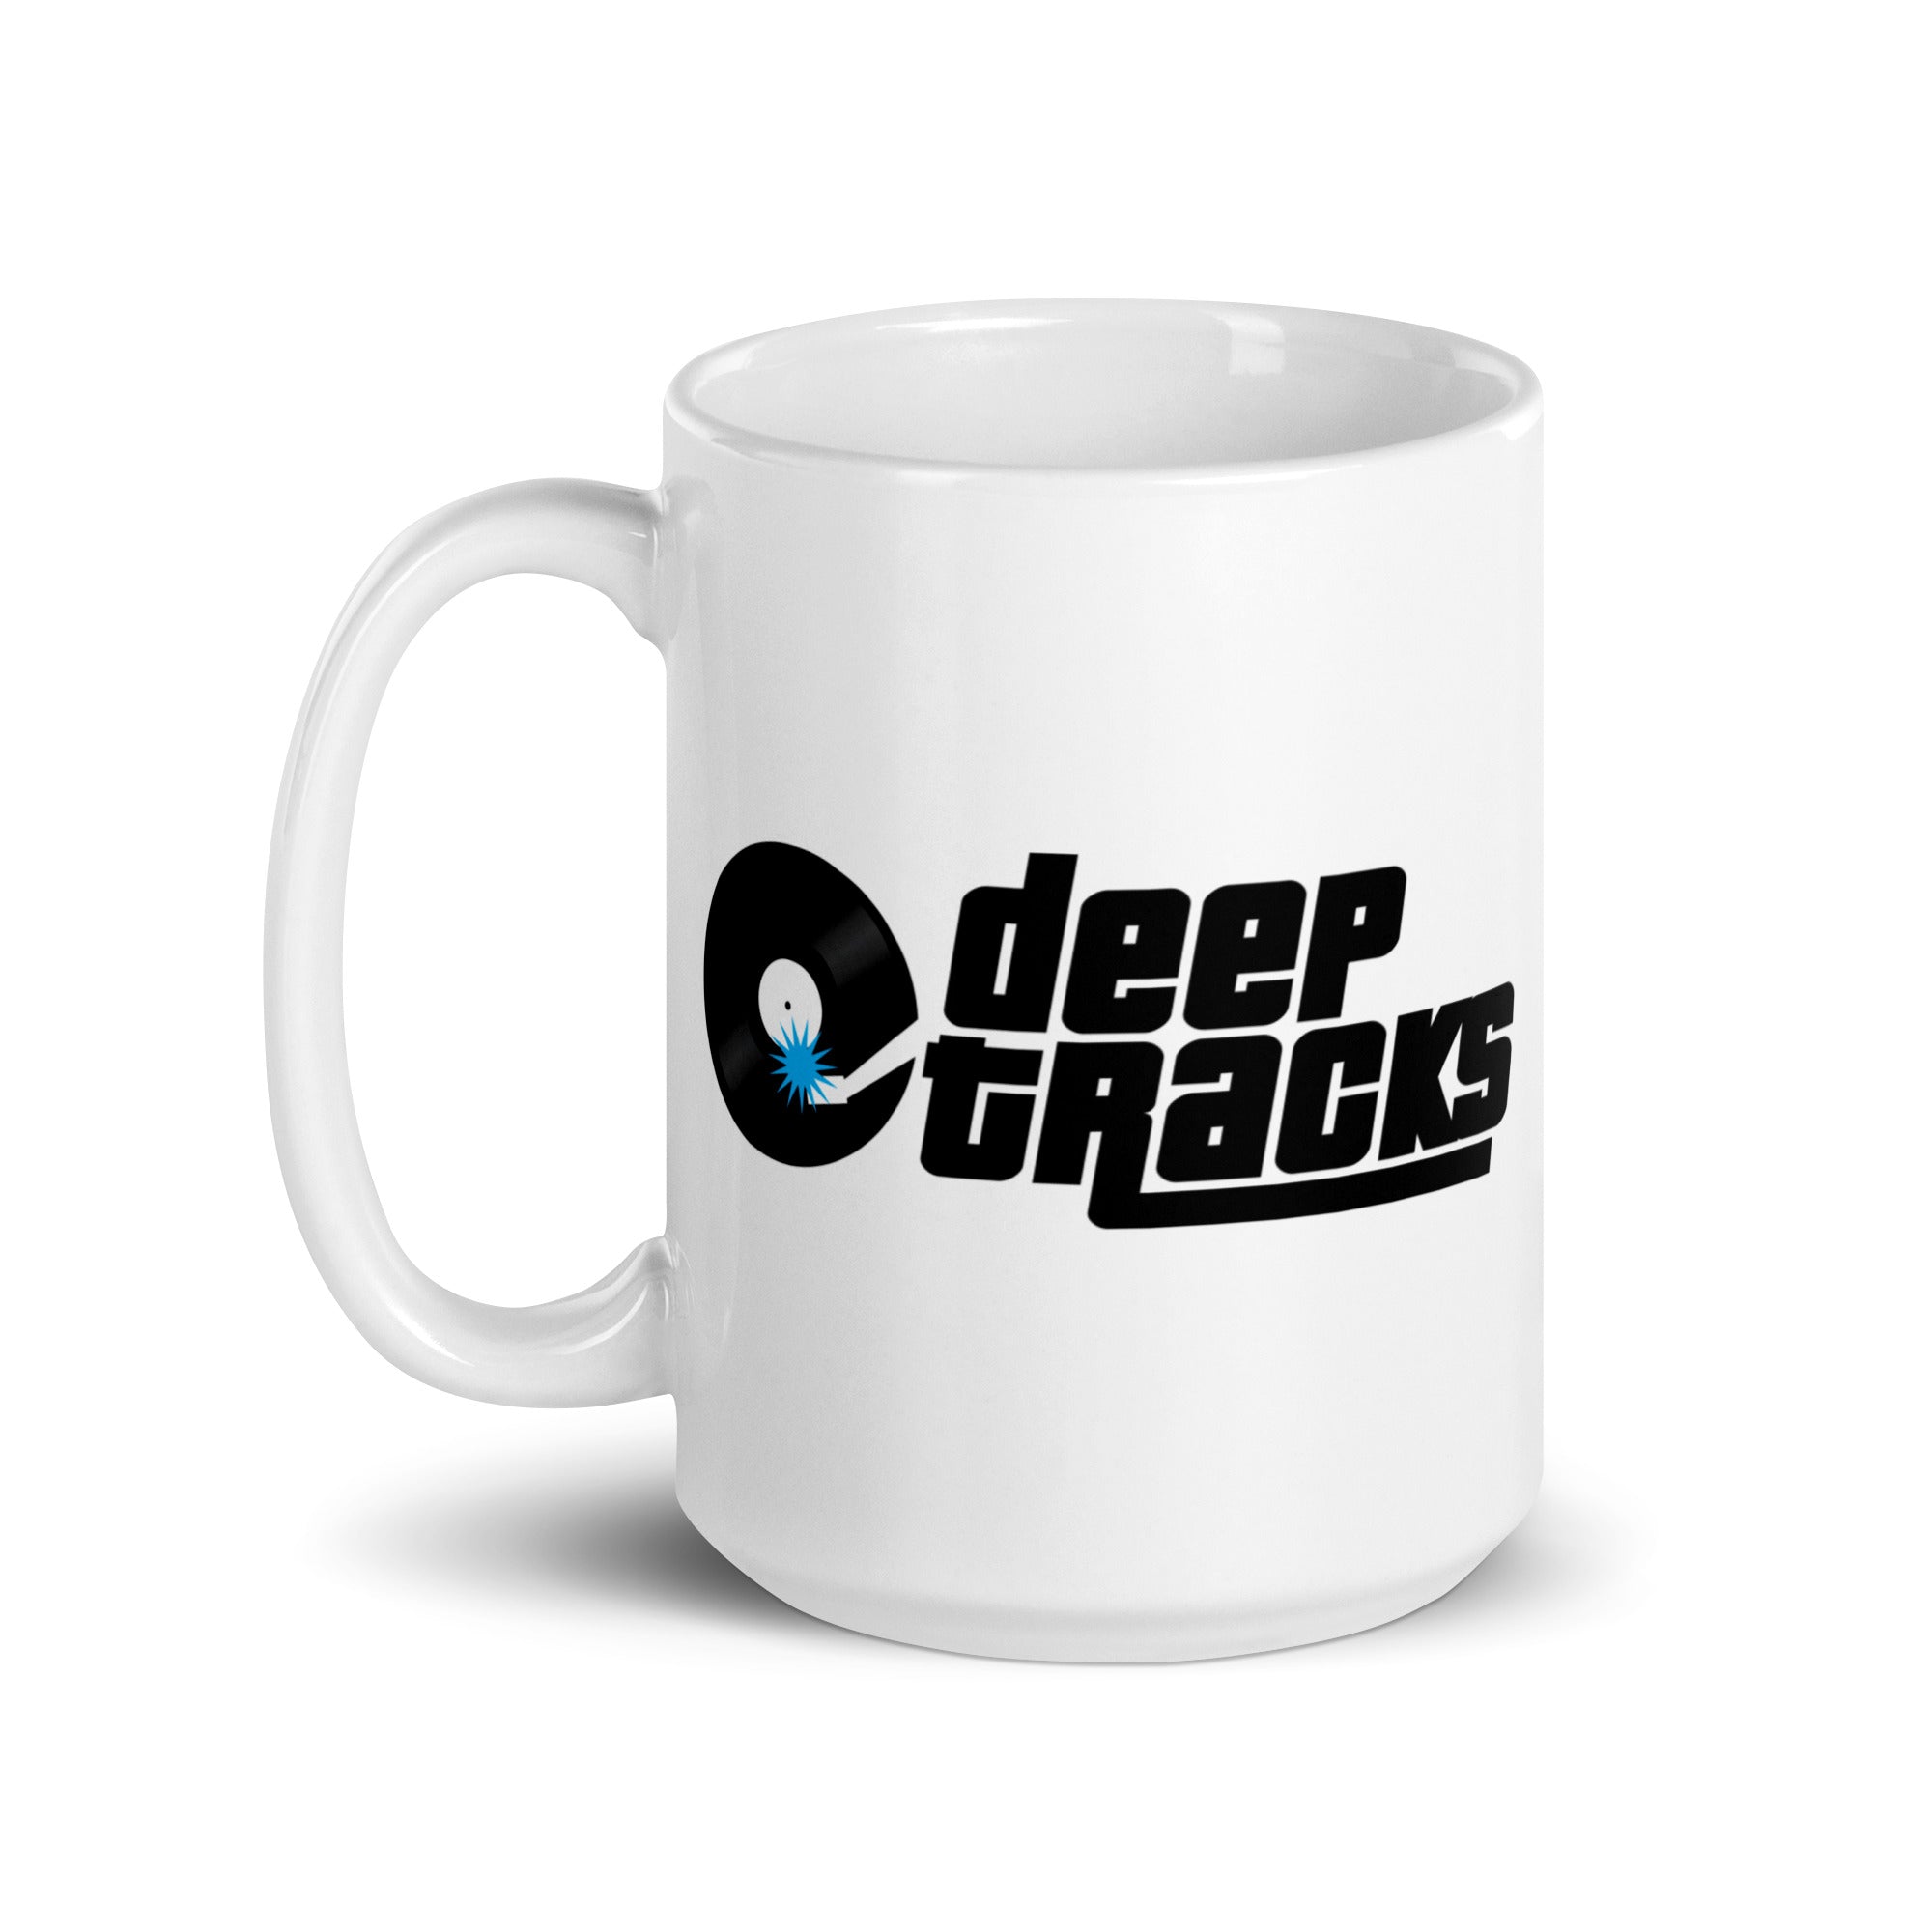 Deep Tracks: Mug